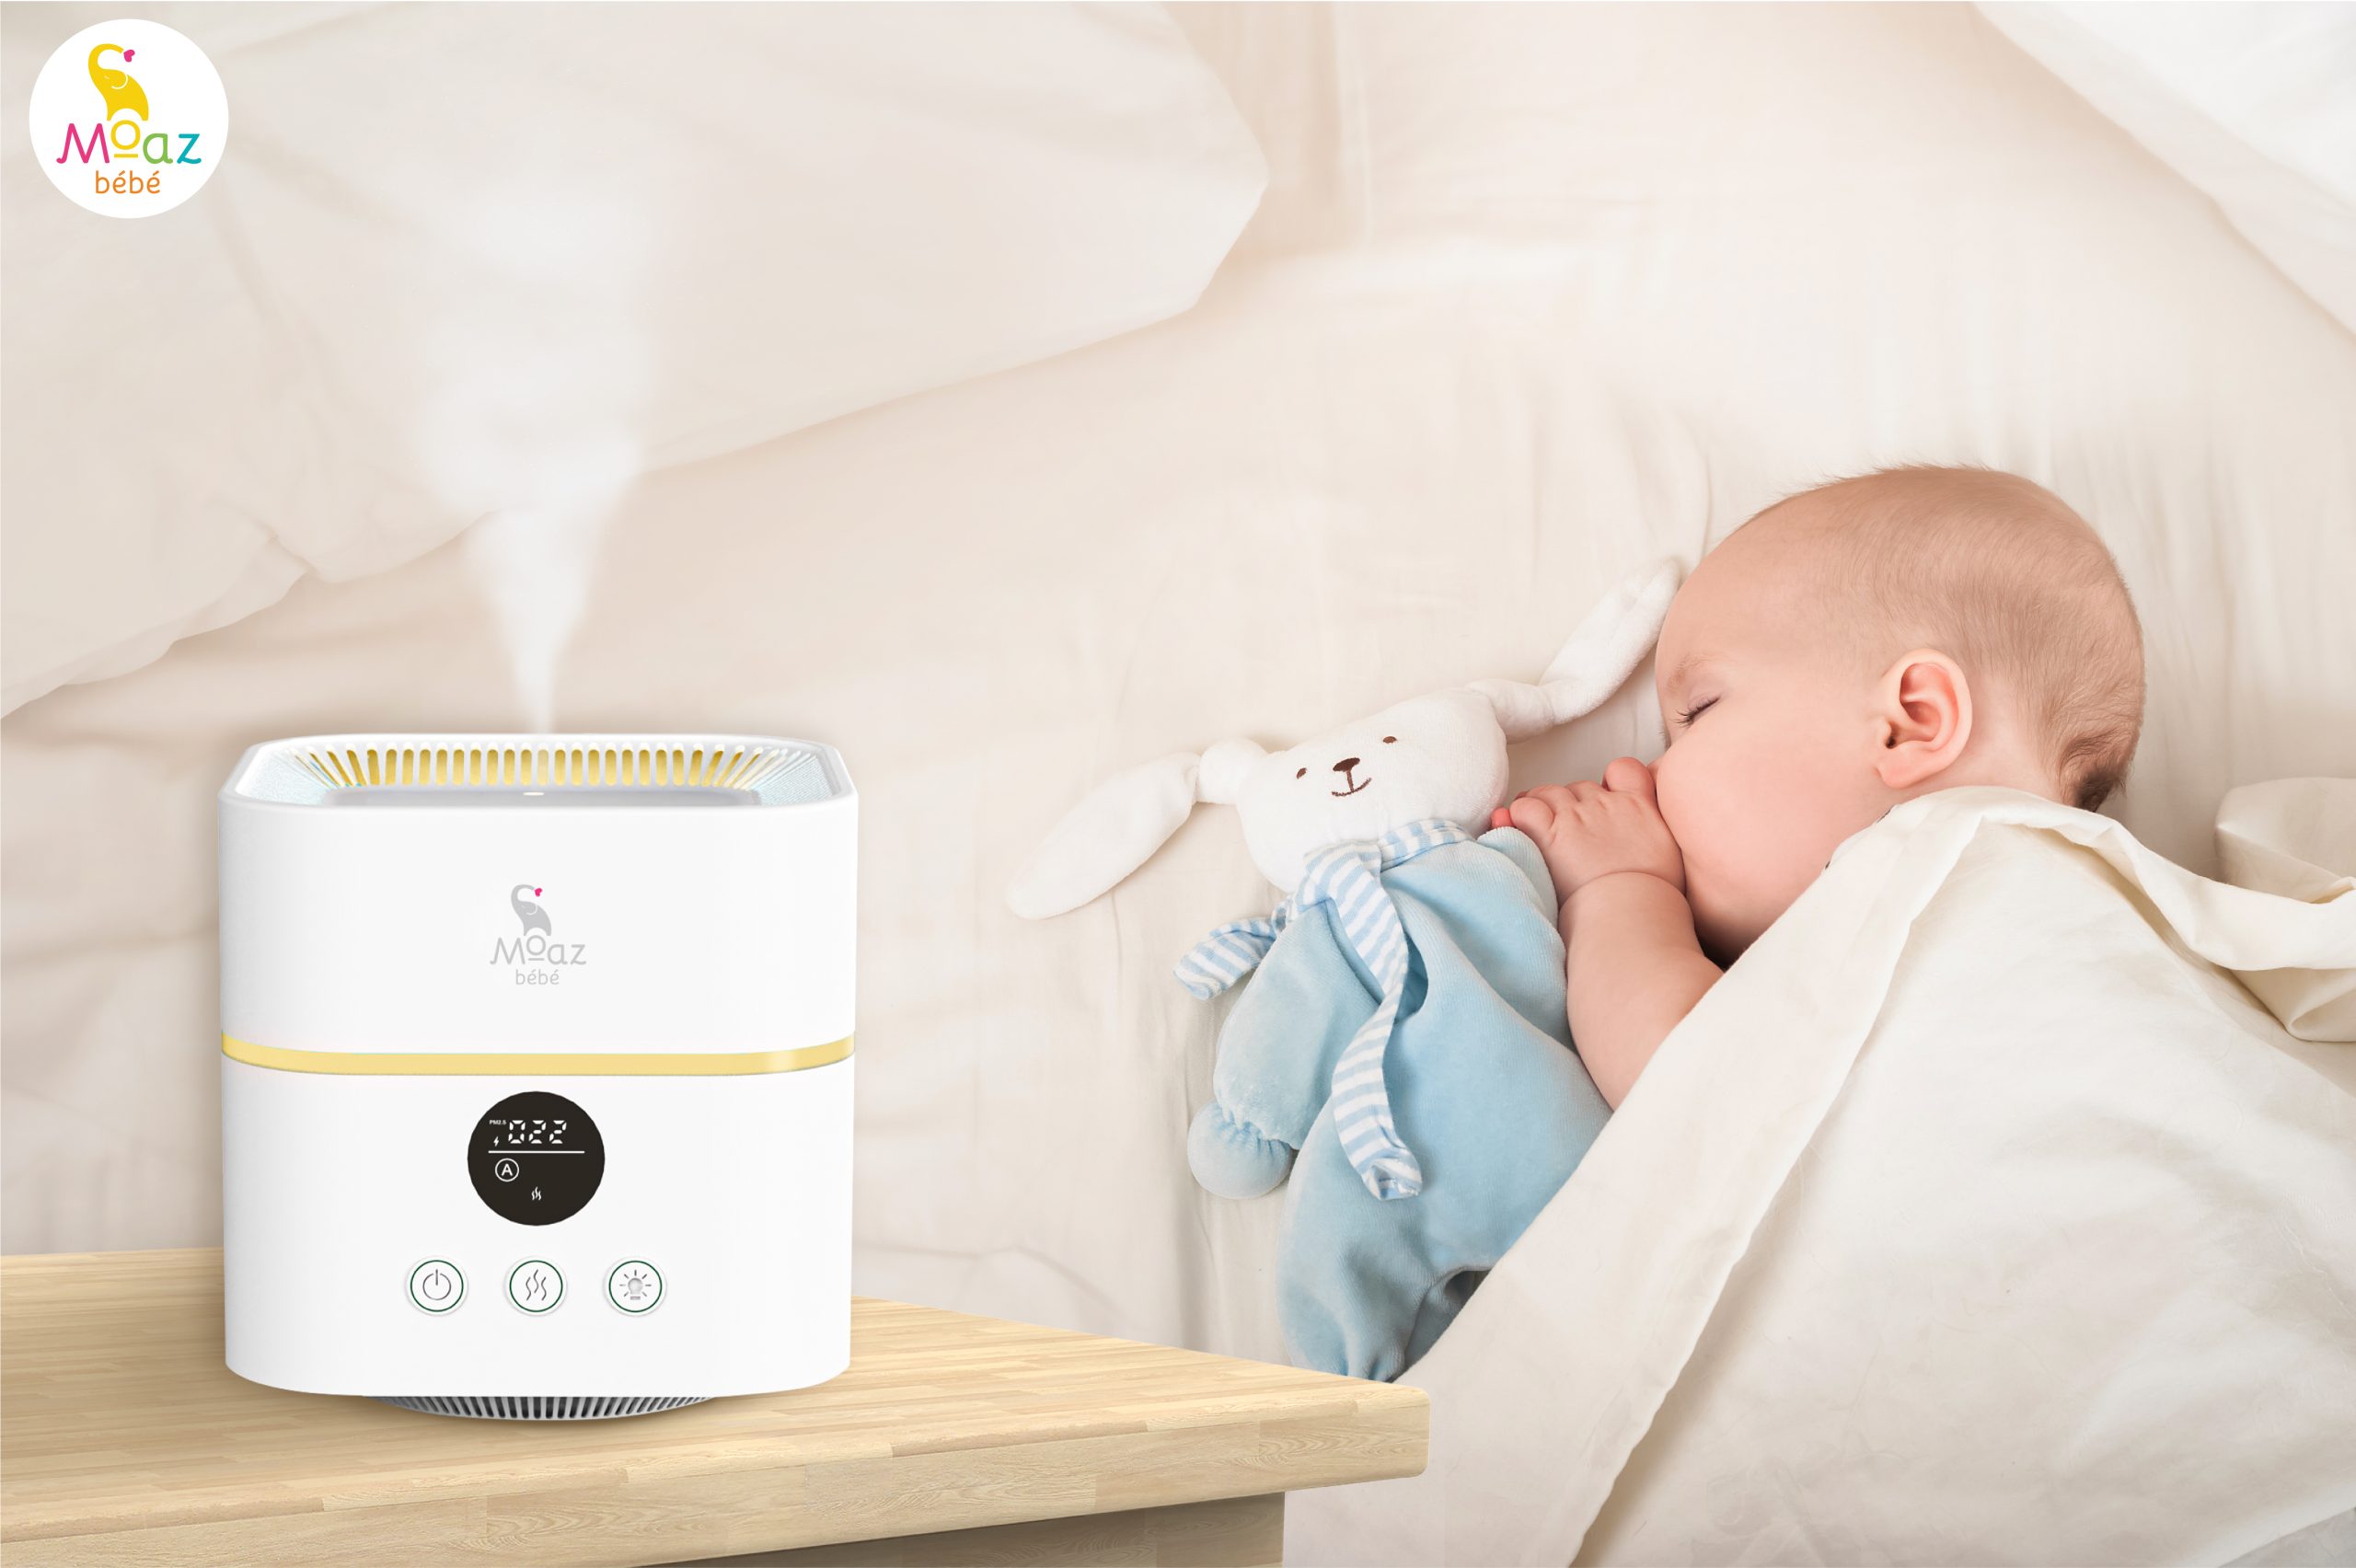 Sử dụng máy lọc không khí tạo ẩm ở phòng có nhiệt độ cao, độ ẩm thấp giúp bé ngủ ngon giấc